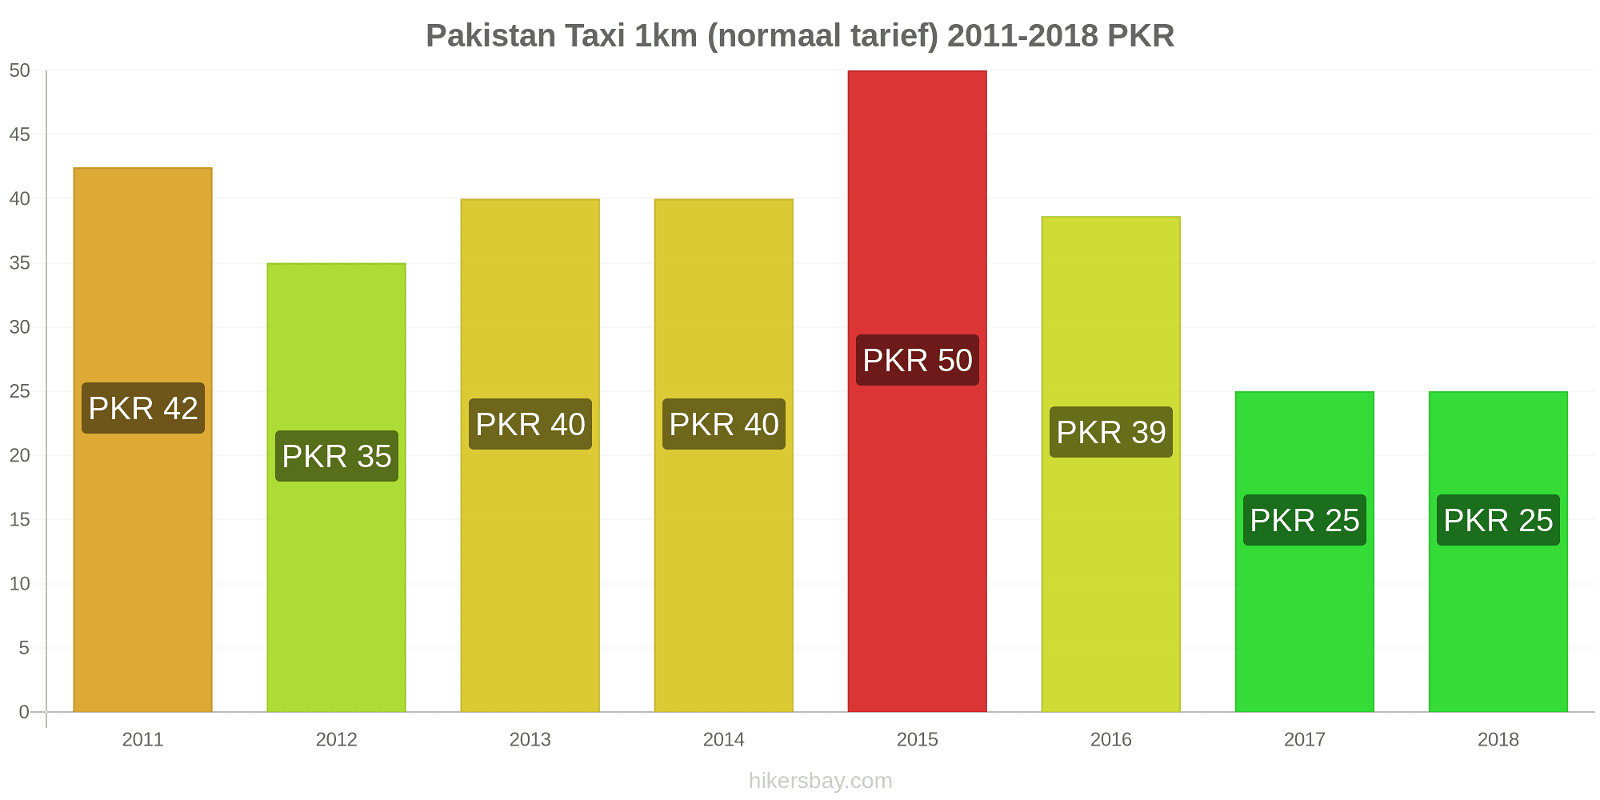 Pakistan prijswijzigingen Taxi 1km (normaal tarief) hikersbay.com